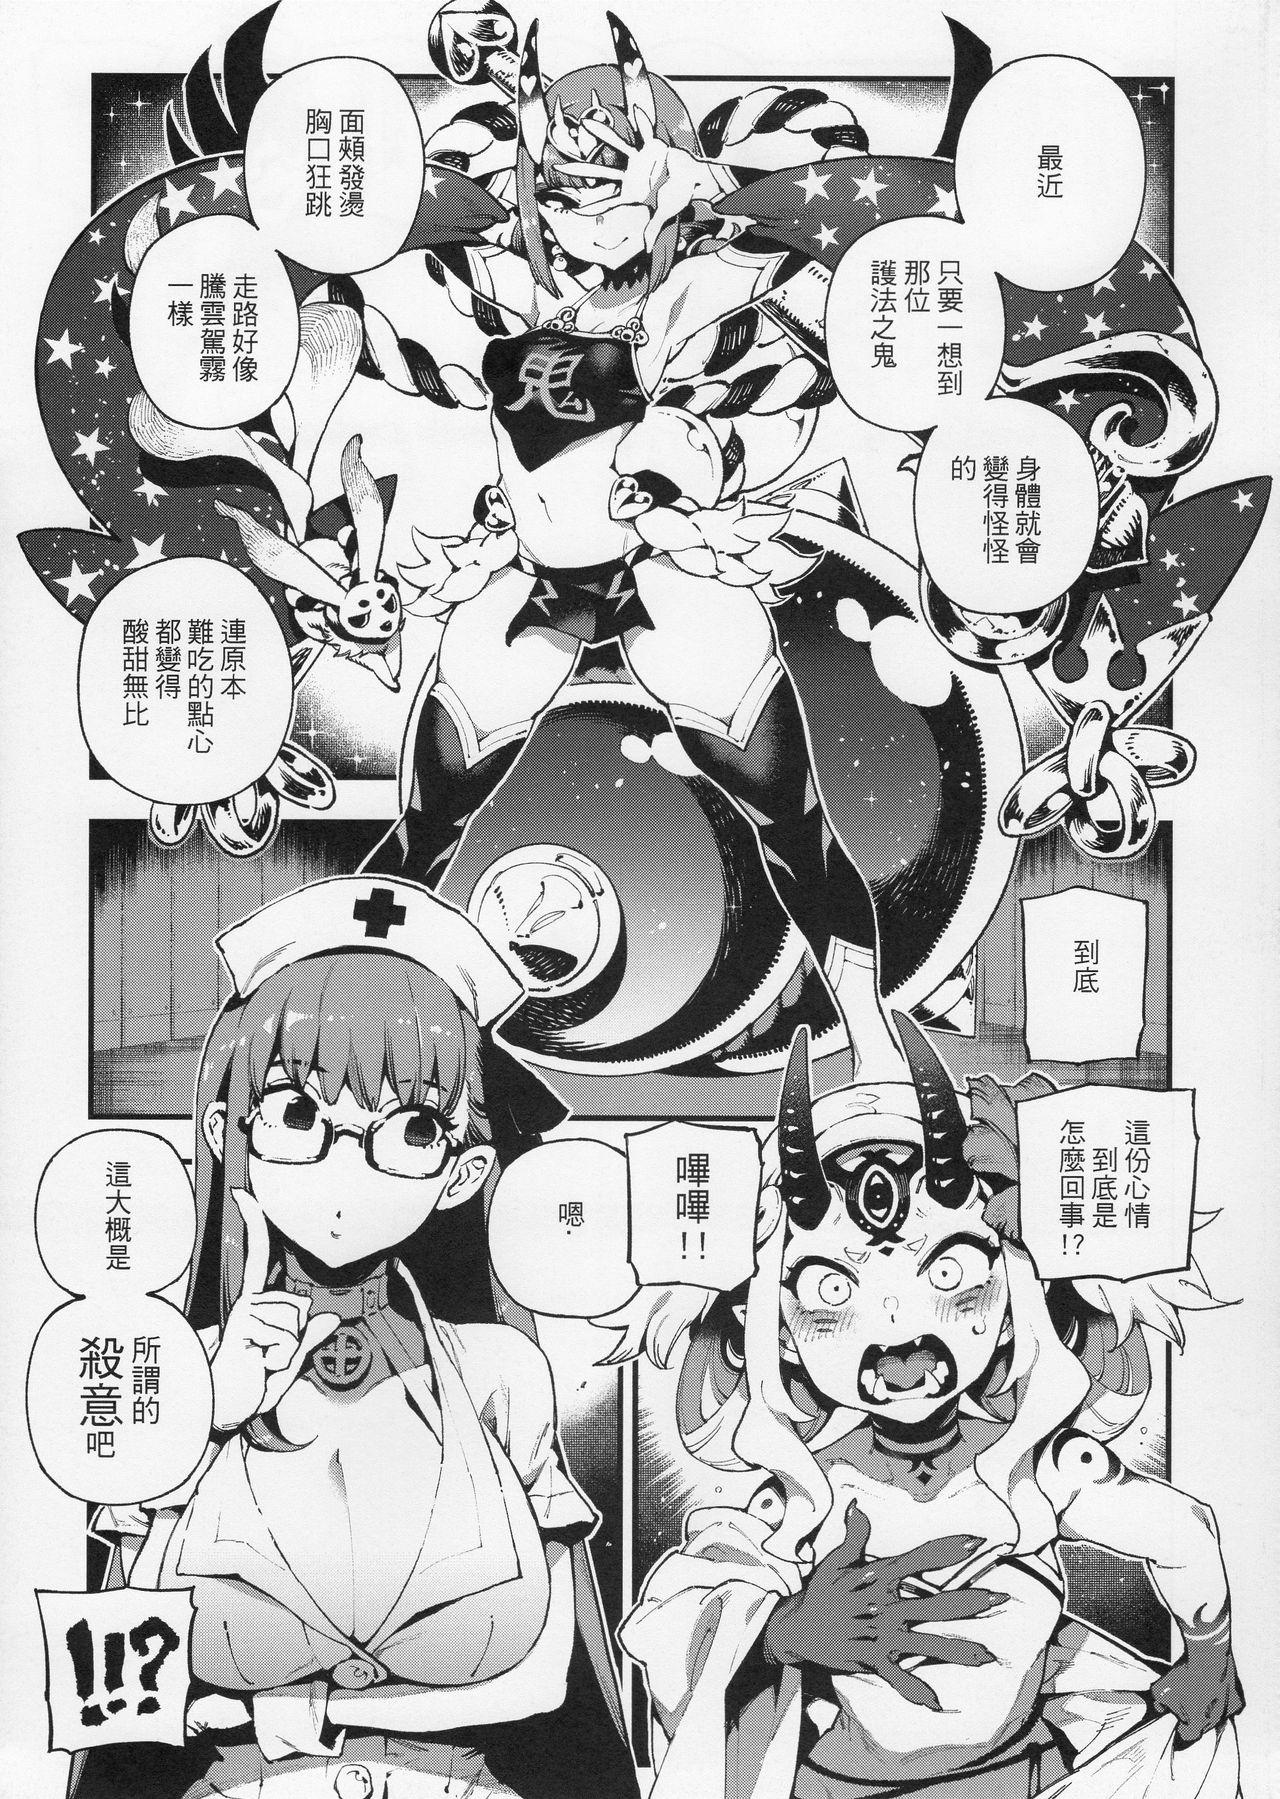 Gloryholes CHALDEA MANIA - Oni & Ma - Fate grand order Nena - Page 5